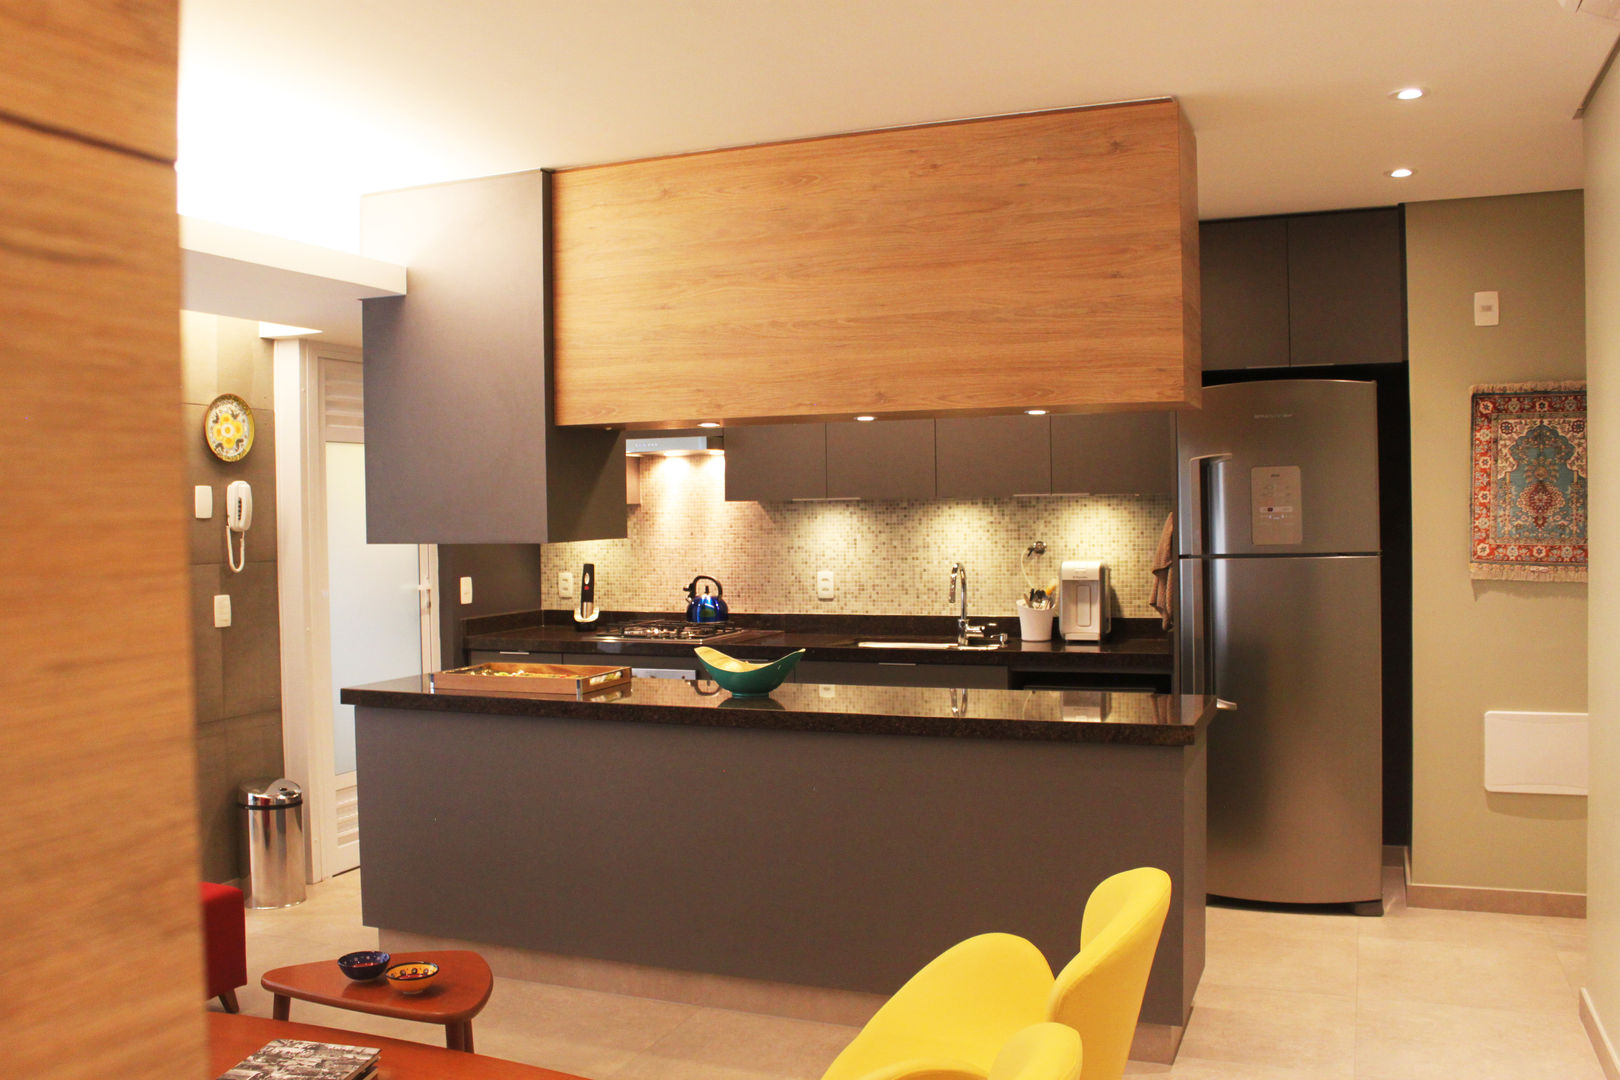 Reforma Residencial: Este pequeno apartamento ganha amplos espaços com um projeto bem planejado., Marcos Takiguthi Arquiteto Marcos Takiguthi Arquiteto